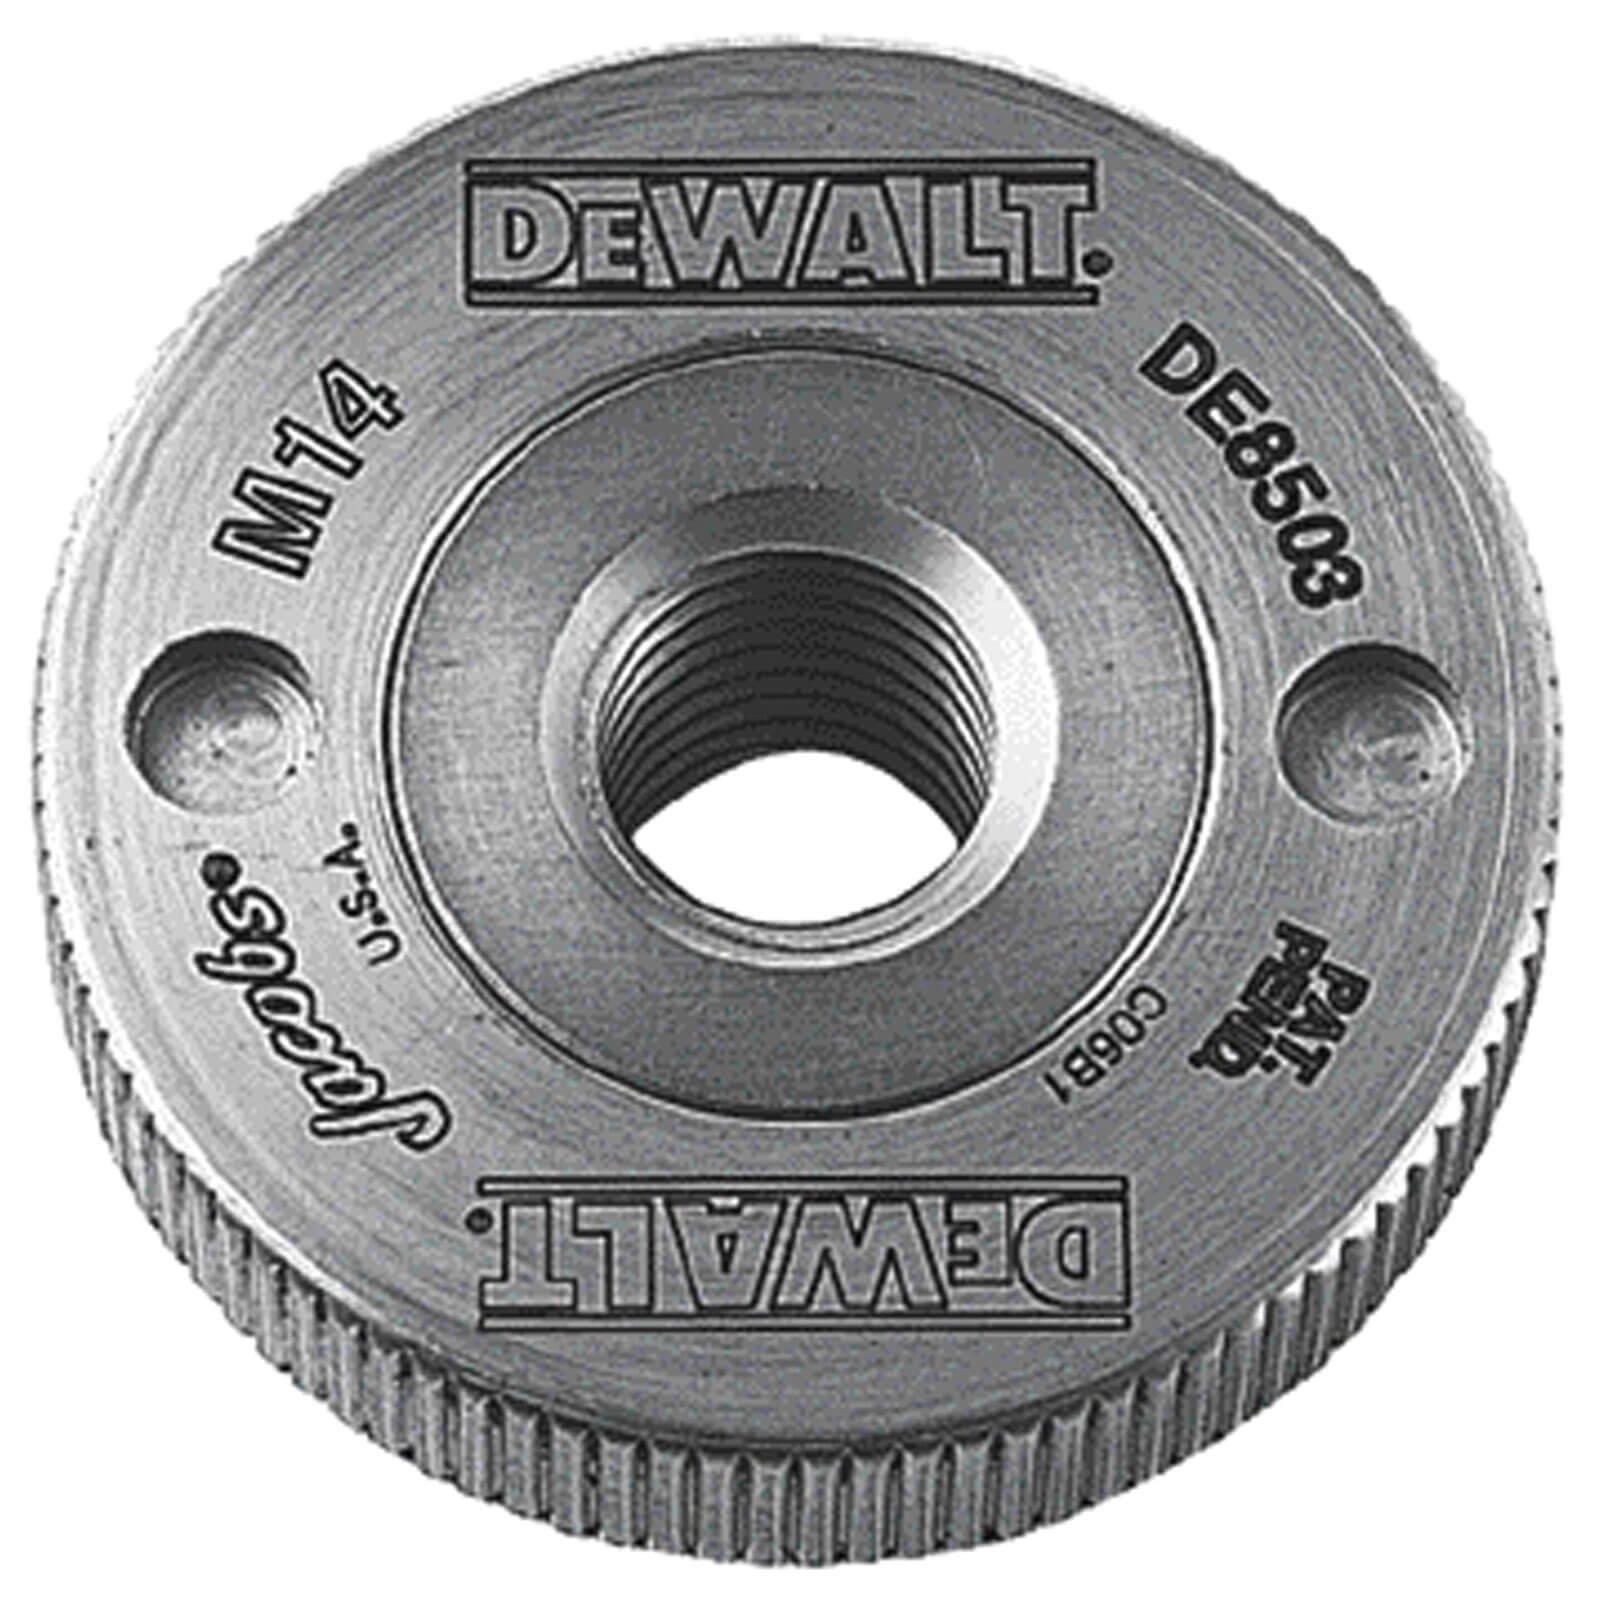 Image of DeWalt DE8503 Quick Release Angle Grinder Flange Nut